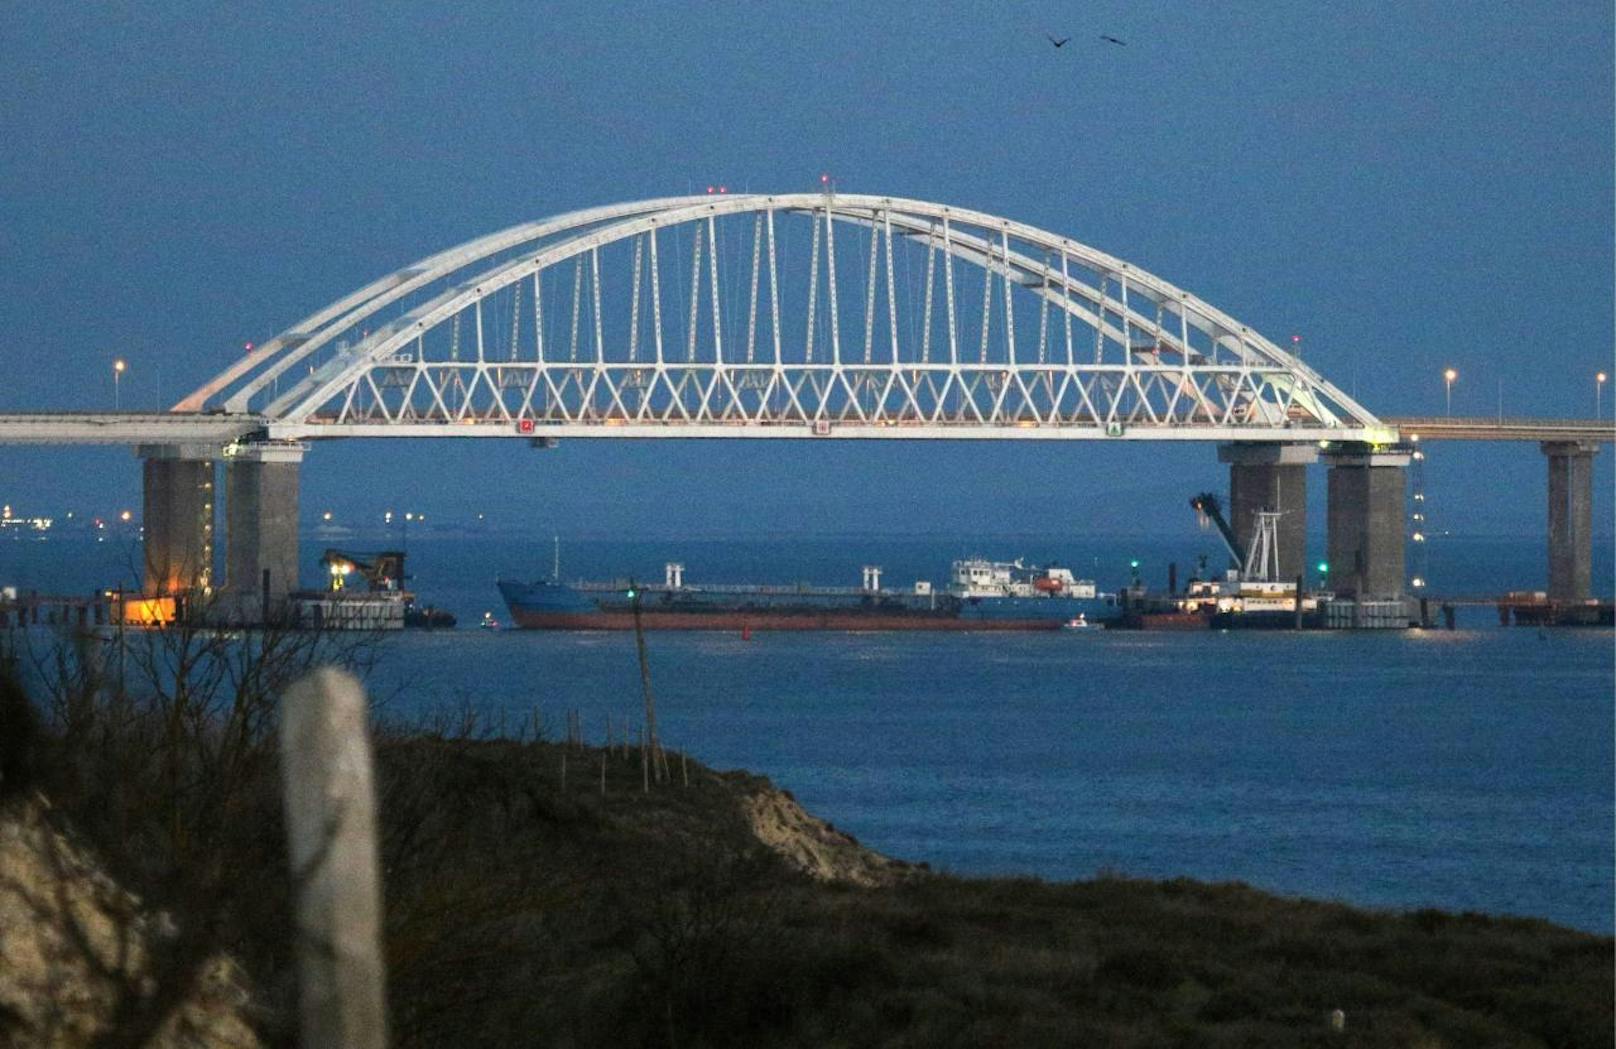 Drei ukrainische Schiffe sollen illegal die russische Grenze überschritten haben und in Russlands Hoheitsgewässer eingedrungen sein.